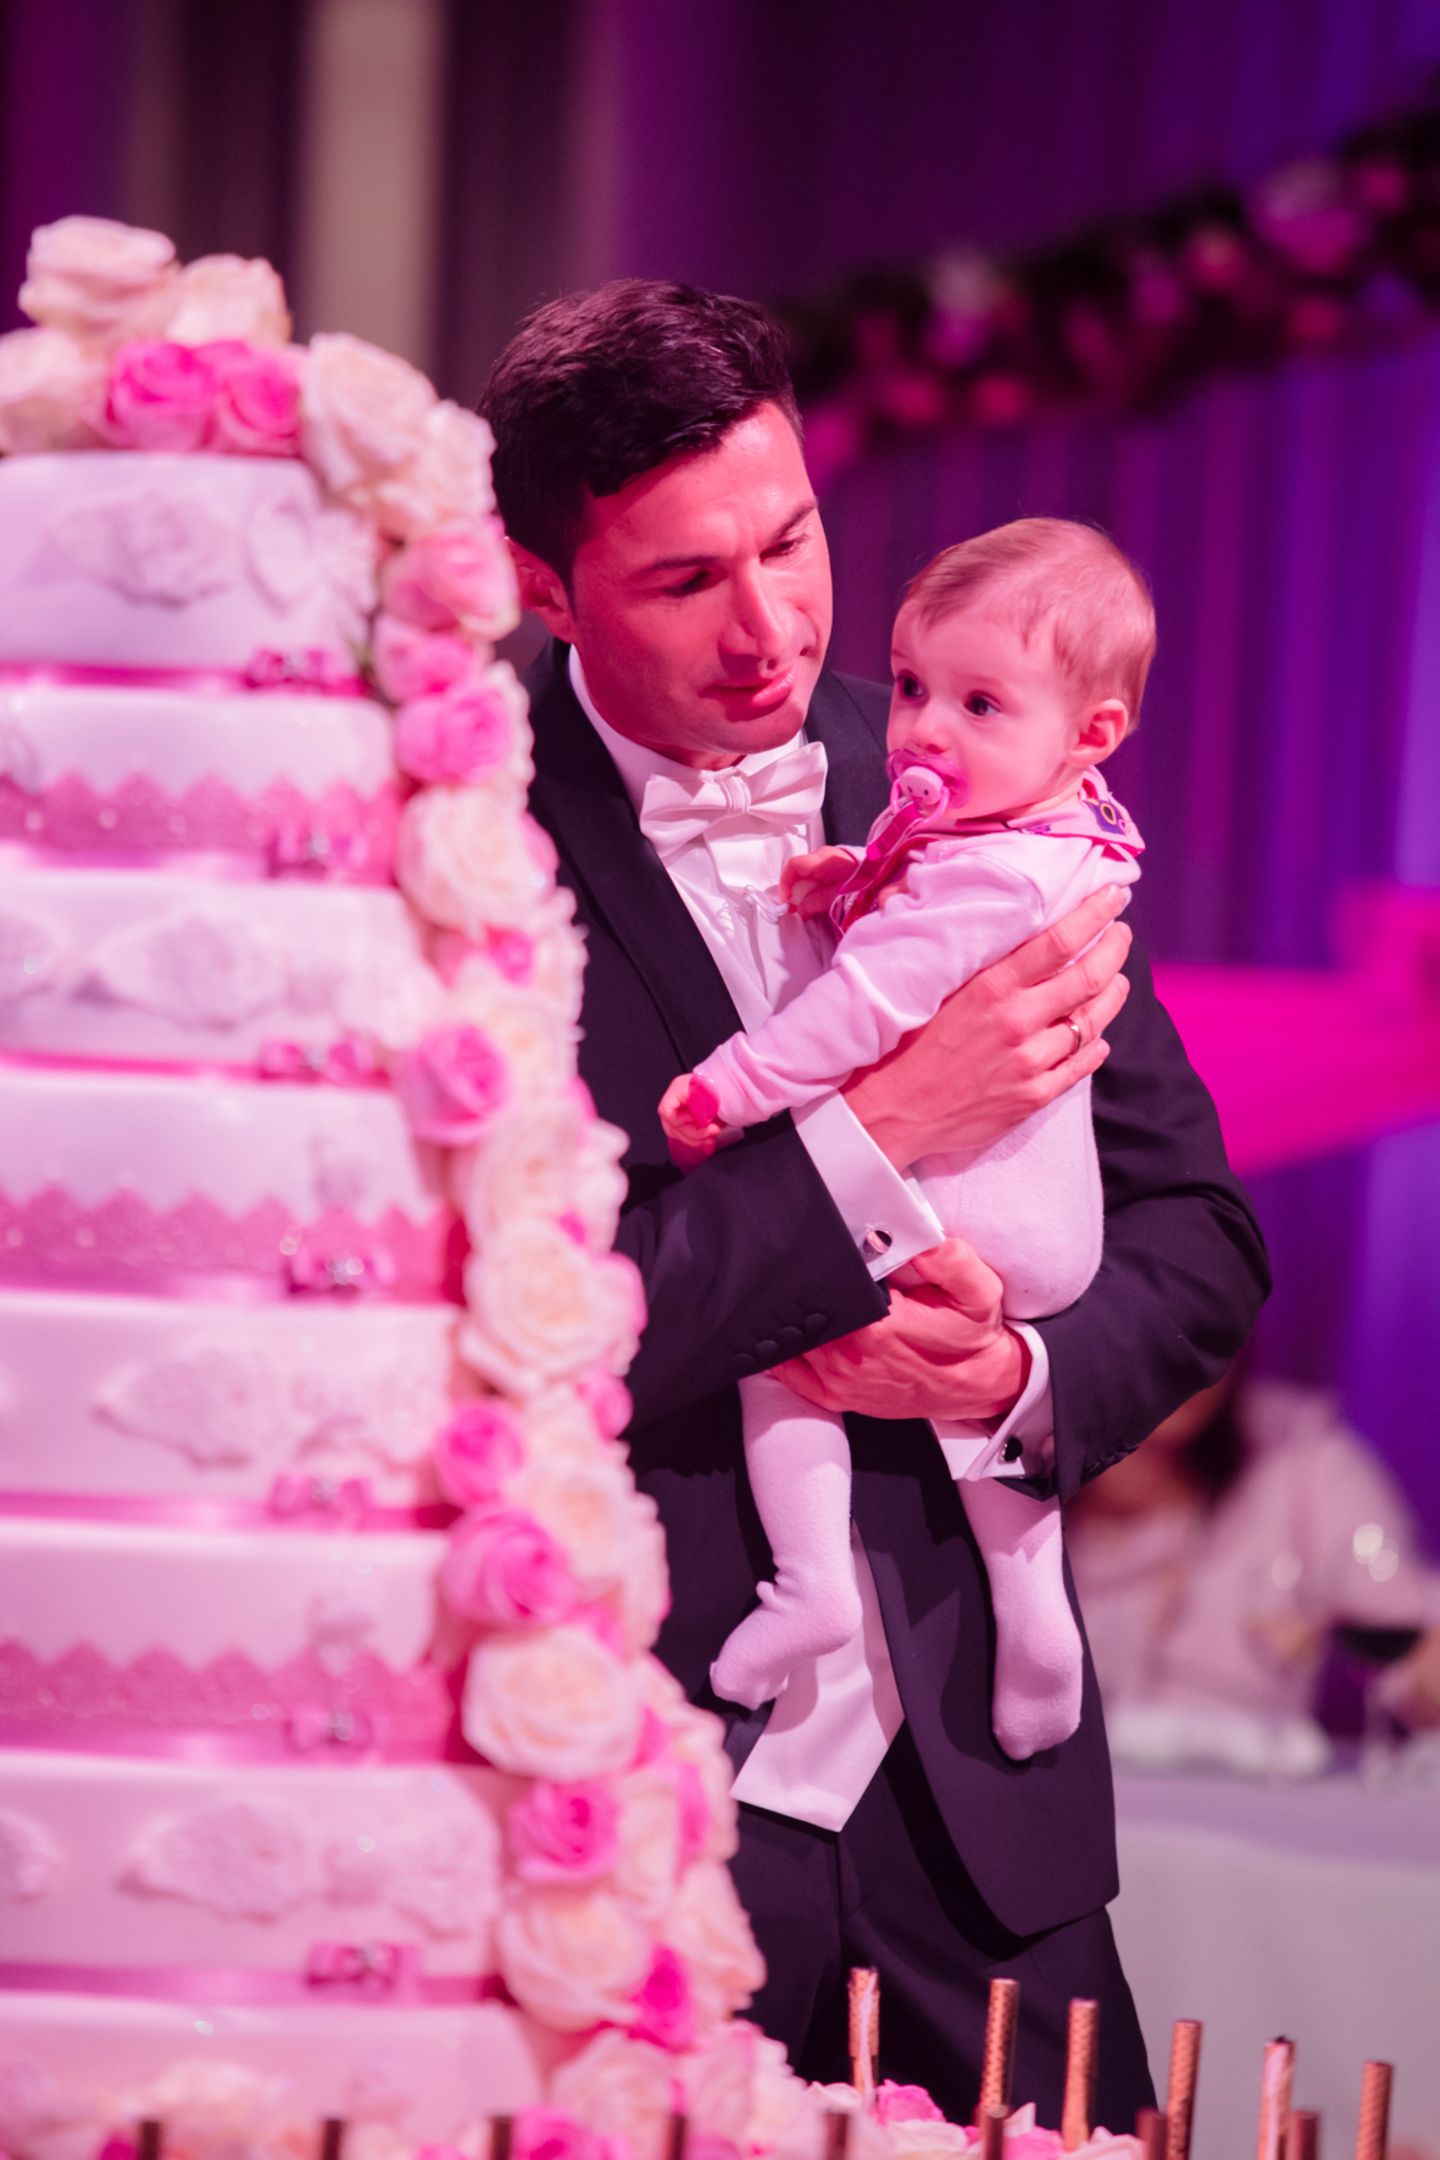 Gemeinsam mit ihrem Papa Lucas nimmt die kleine Sophia die achtstöckige Hochzeitstorte unter die Lupe.